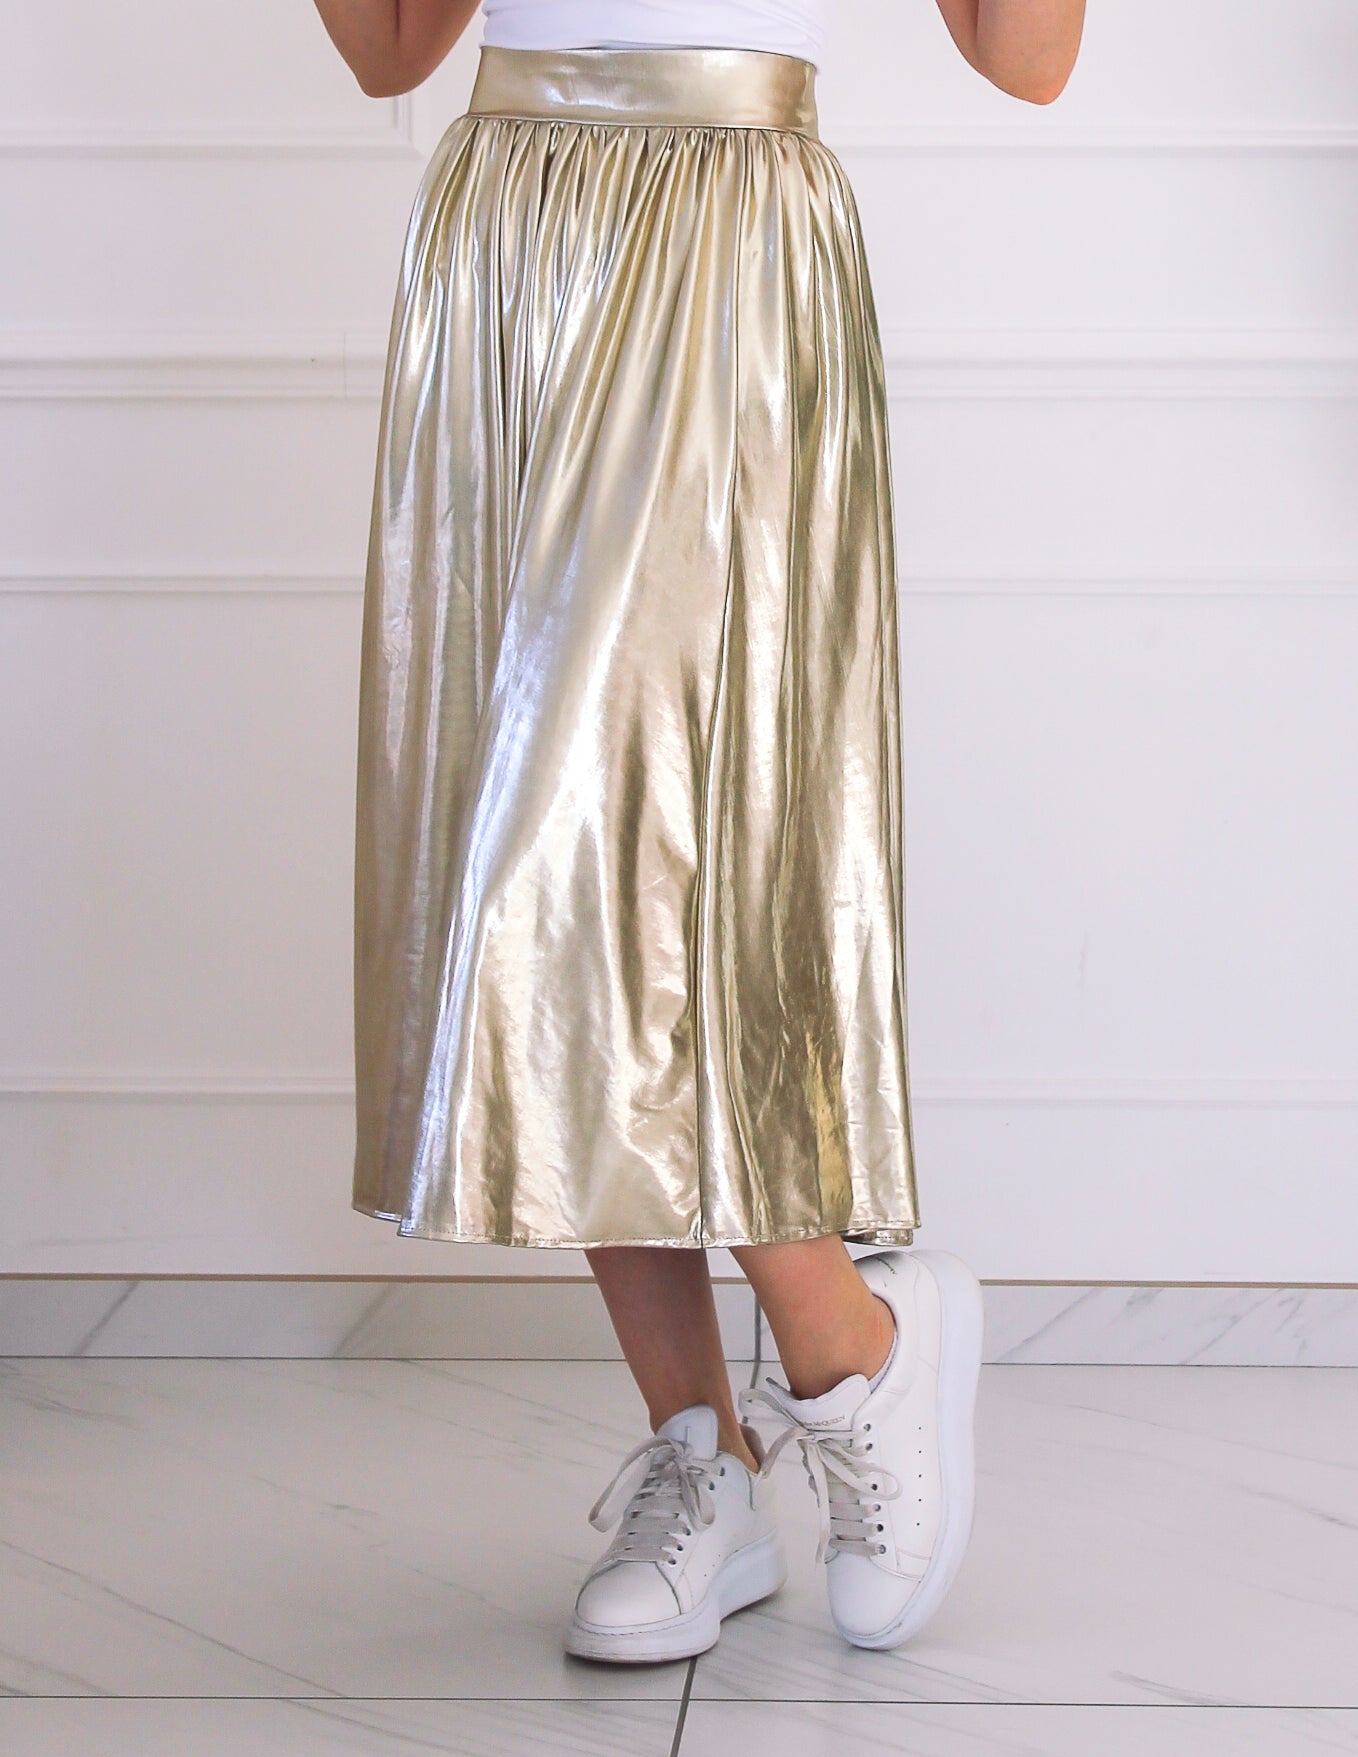 Long golden skirt